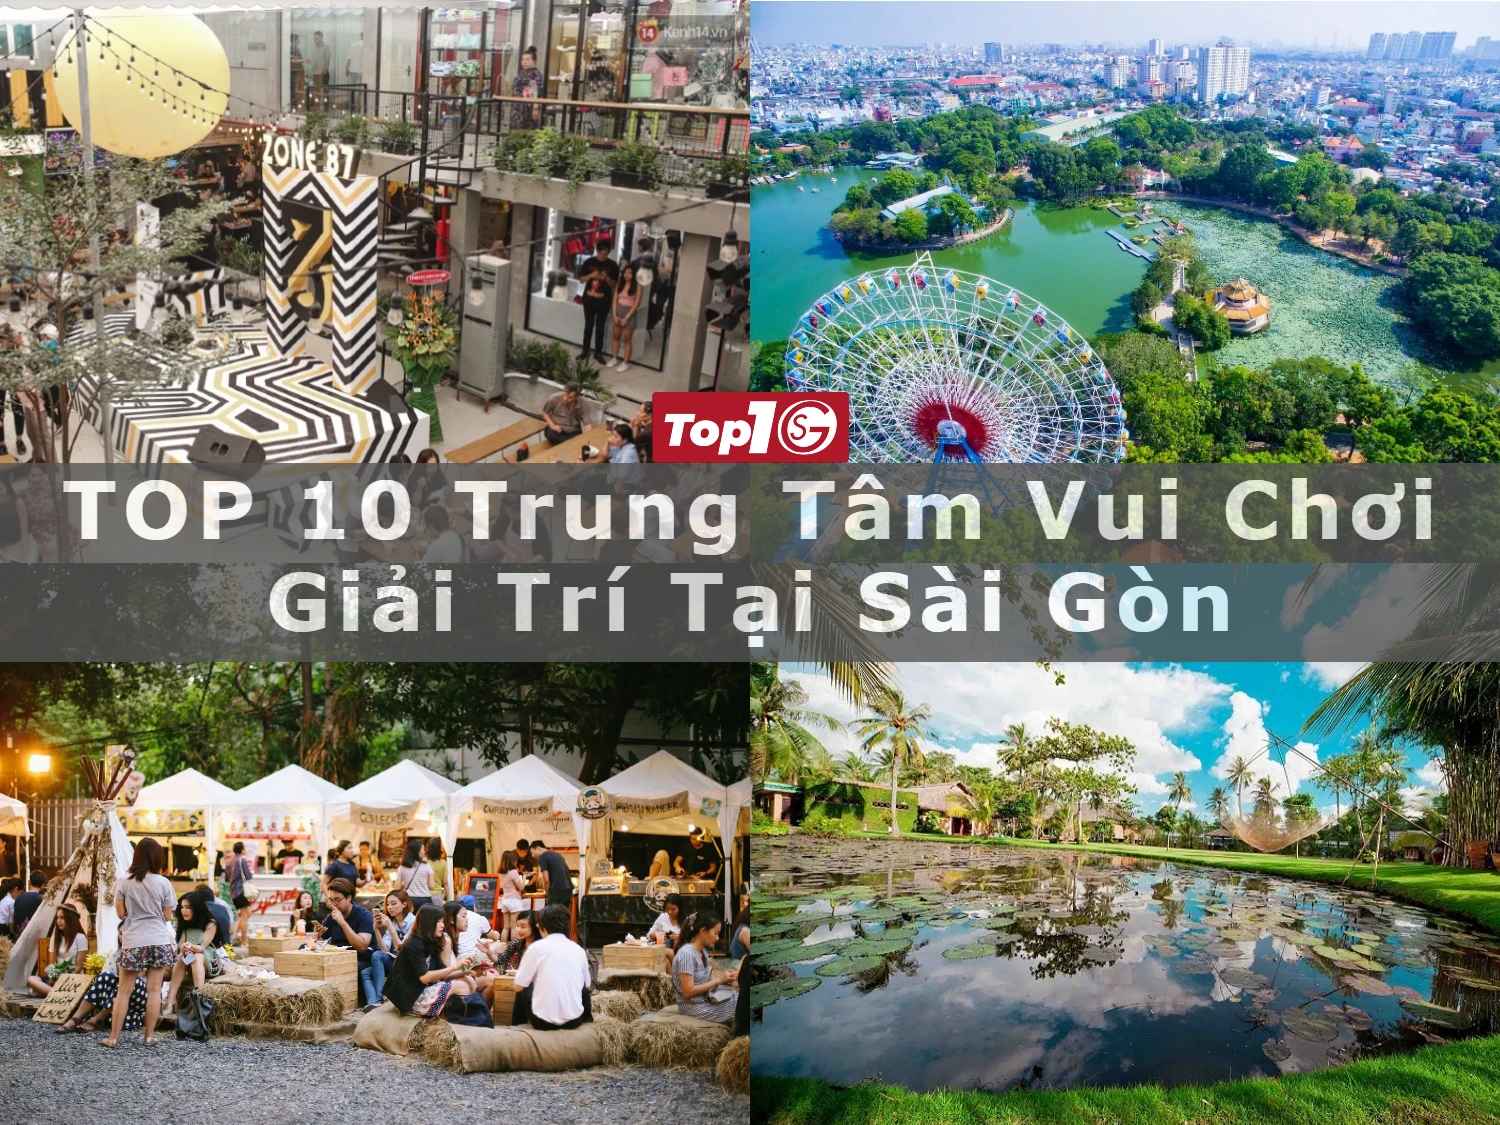 TOP 10 trung tâm vui chơi giải trí tại Sài Gòn